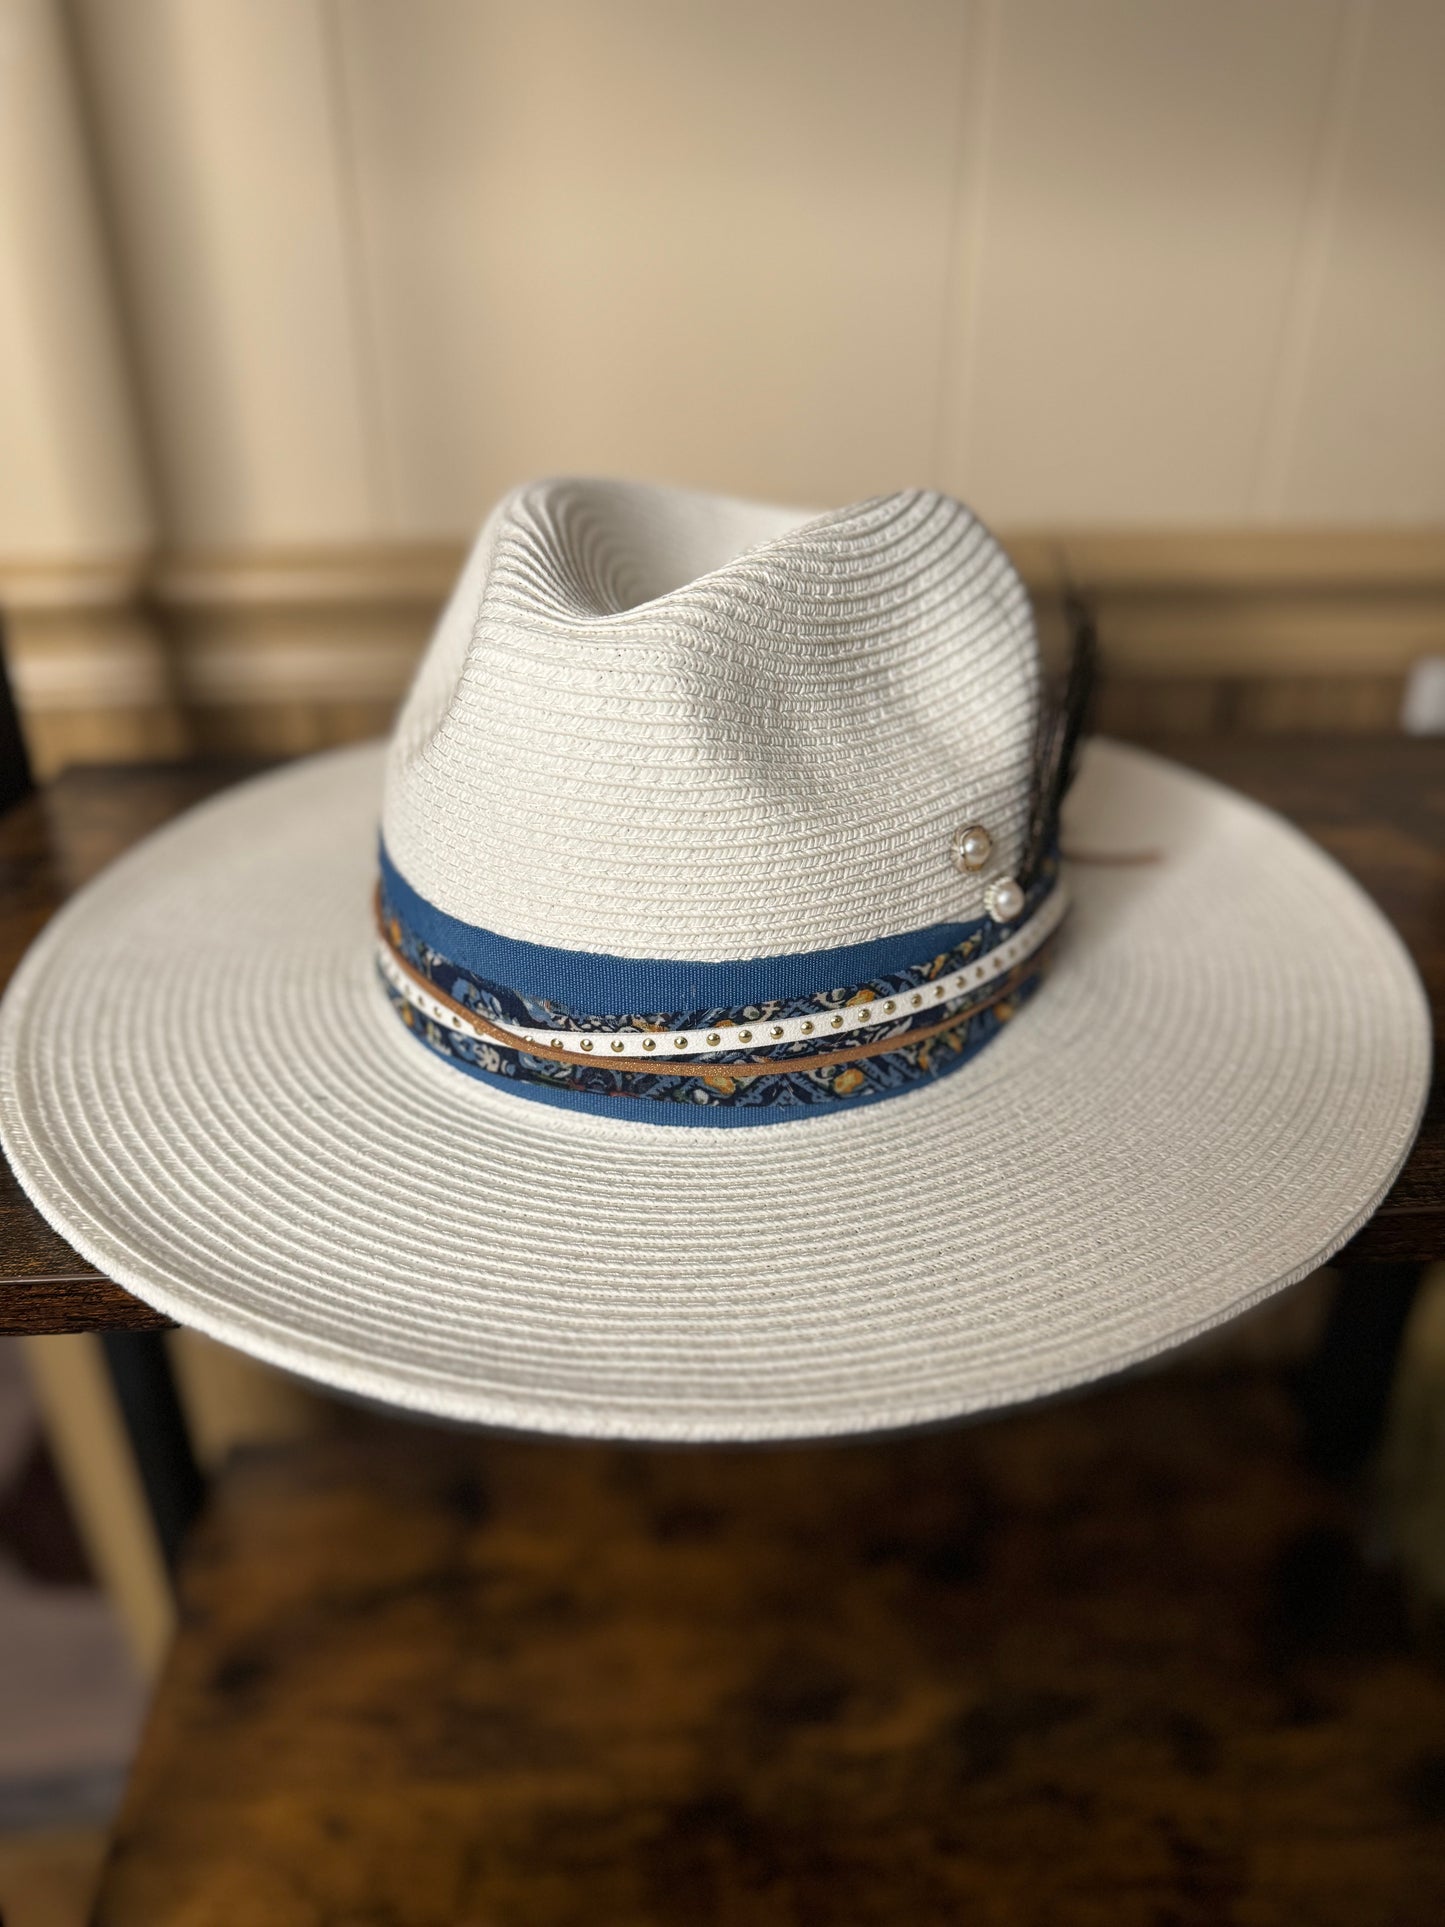 The Dallas Straw Hat